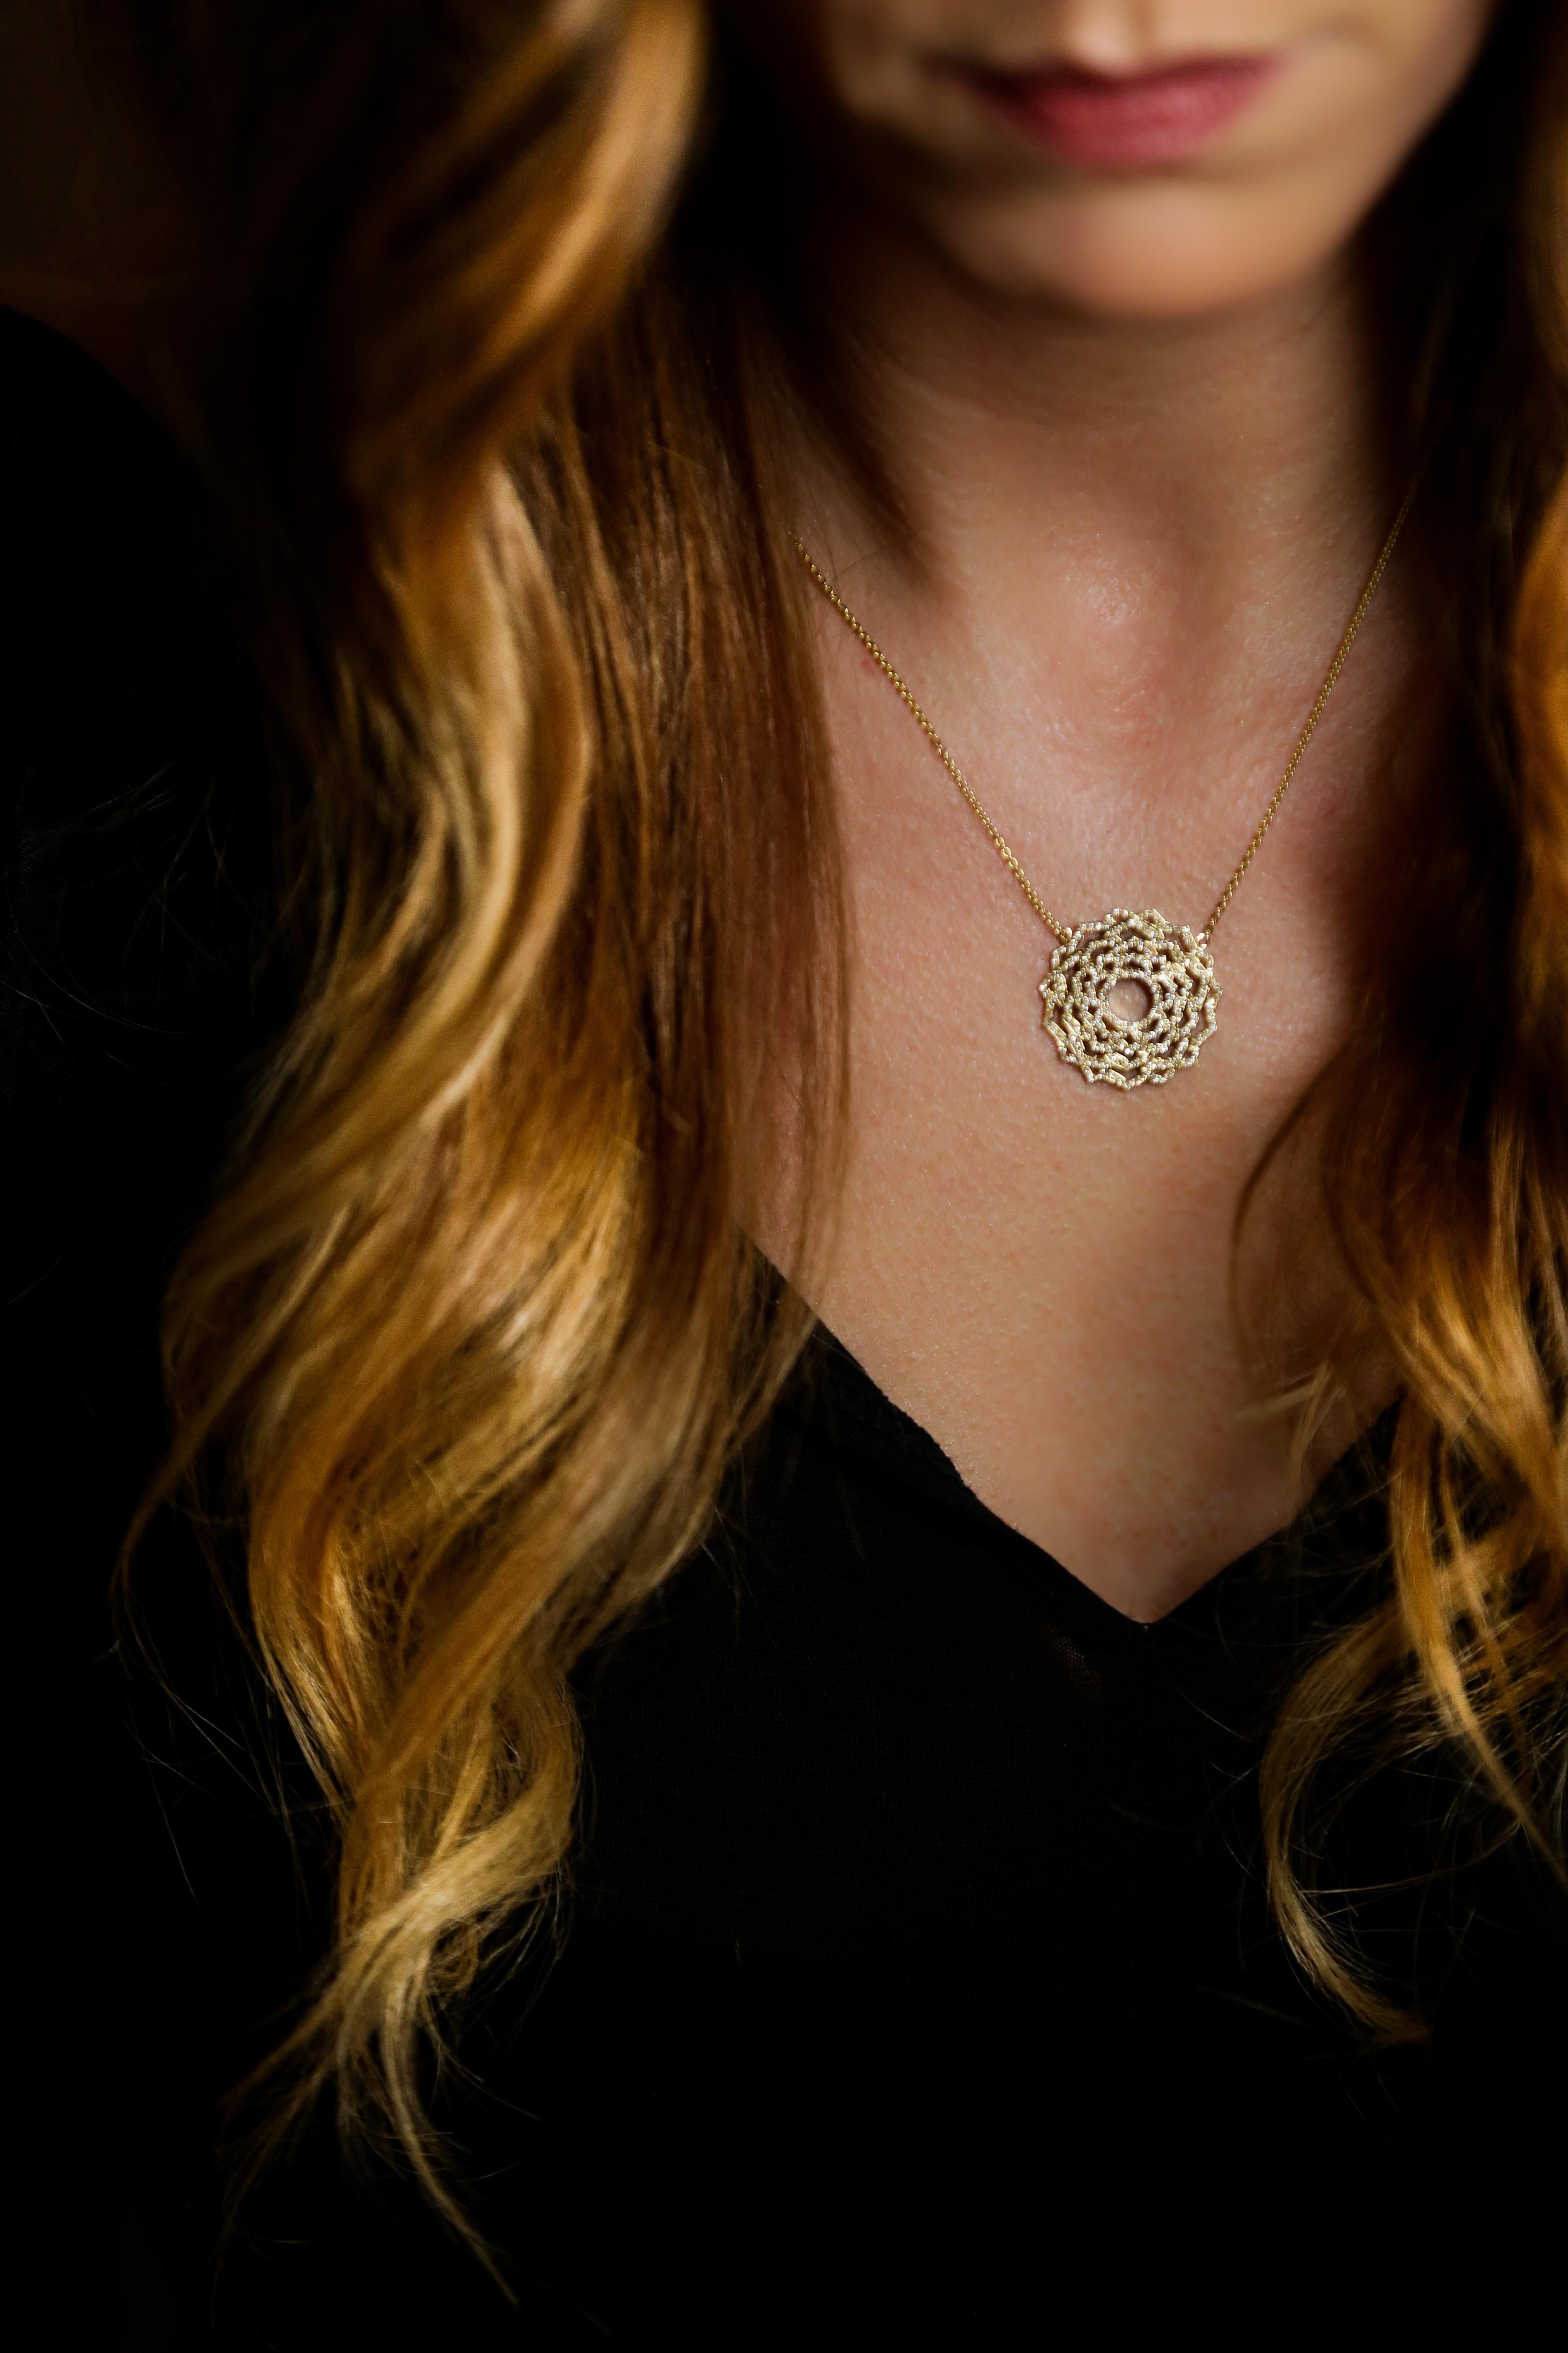 Collier pendentif avec diamants inspiré par le Sahasrara Chakra du Yoga, le chakra de la couronne, fabriqué à la main en or rose 14 carats. Le Sahasrara Chakra est le centre mental de notre corps, situé au sommet de la tête. Il est fortement lié à